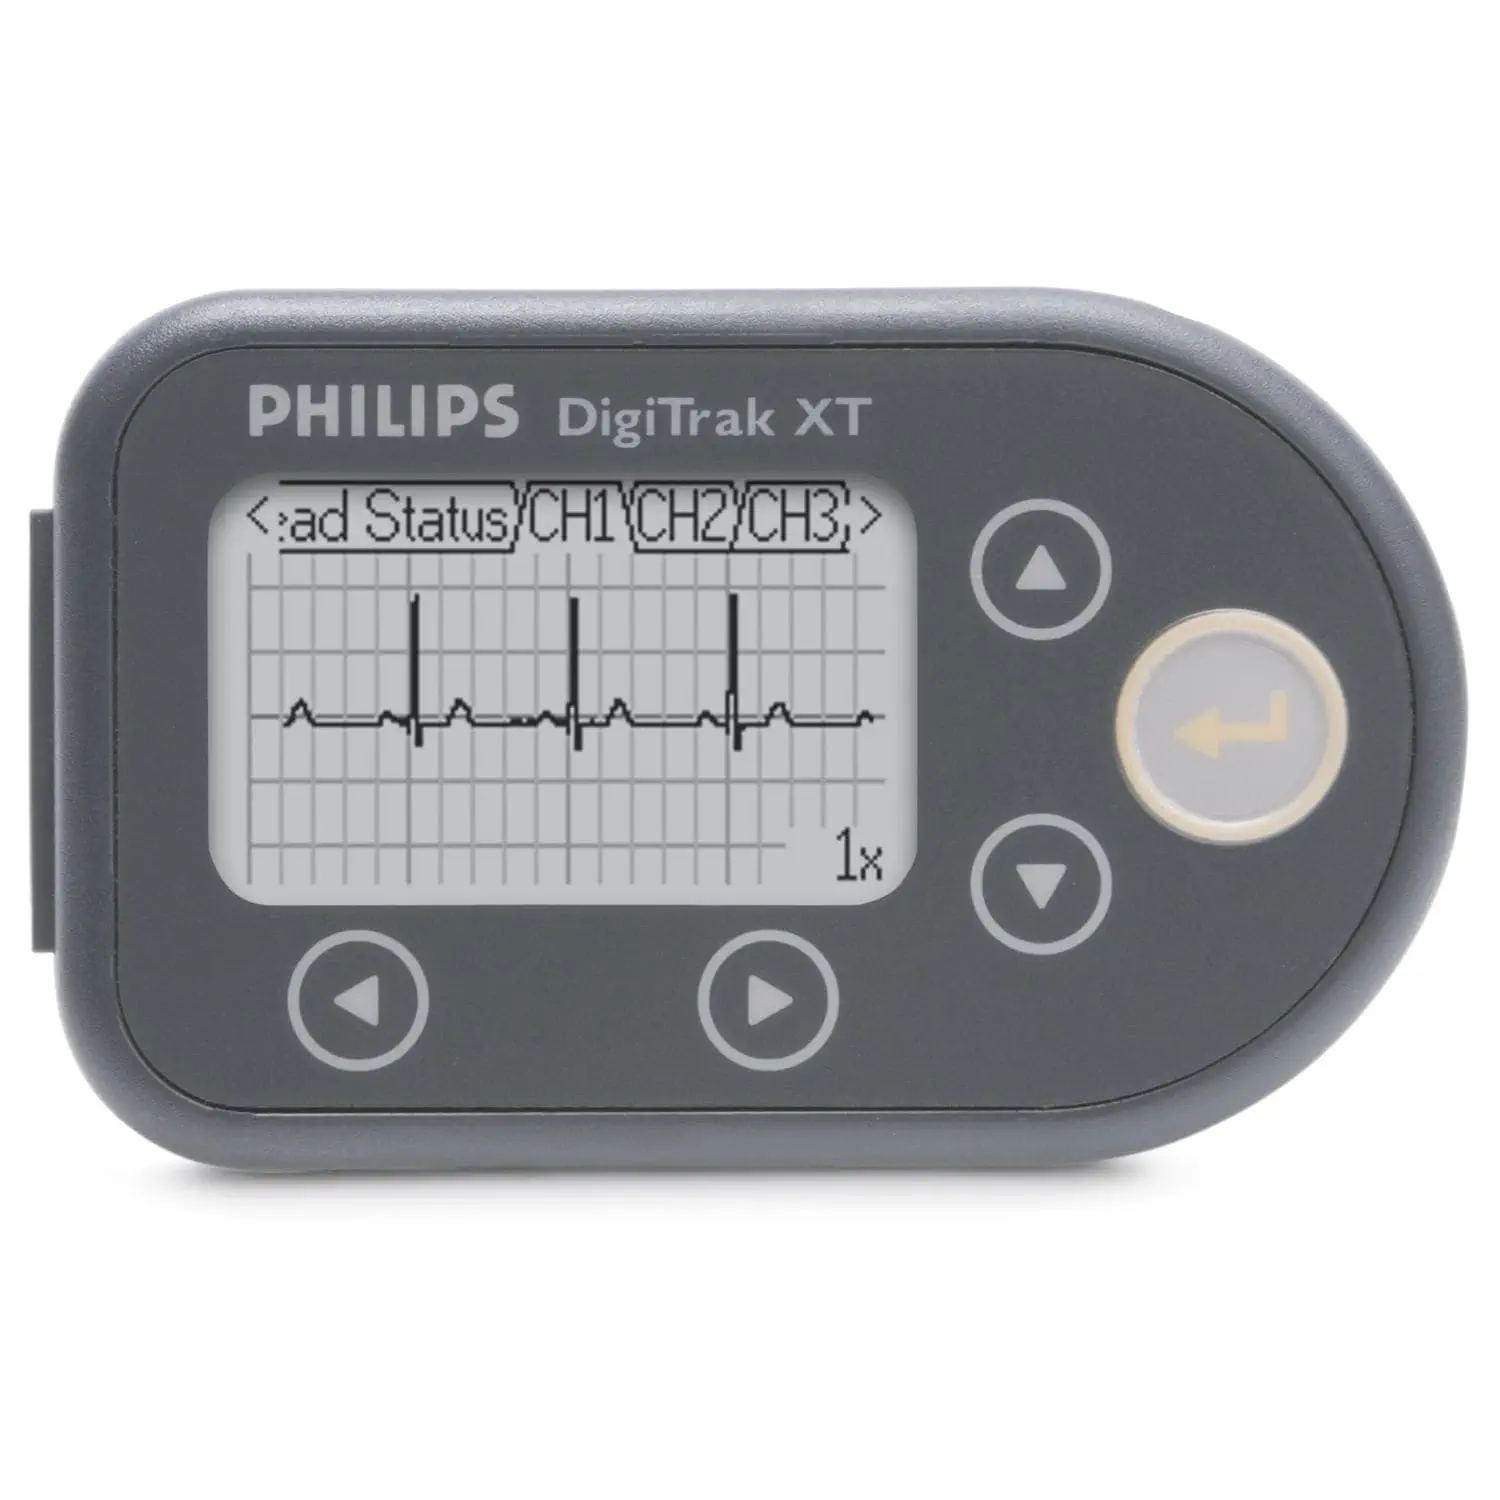 เครื่องตรวจติดตามการทำงานของหัวใจชนิดต่อเนื่องไม่น้อยกว่า 24 ชั่วโมง  12-channel Holter monitor DigiTrak XT  Philips